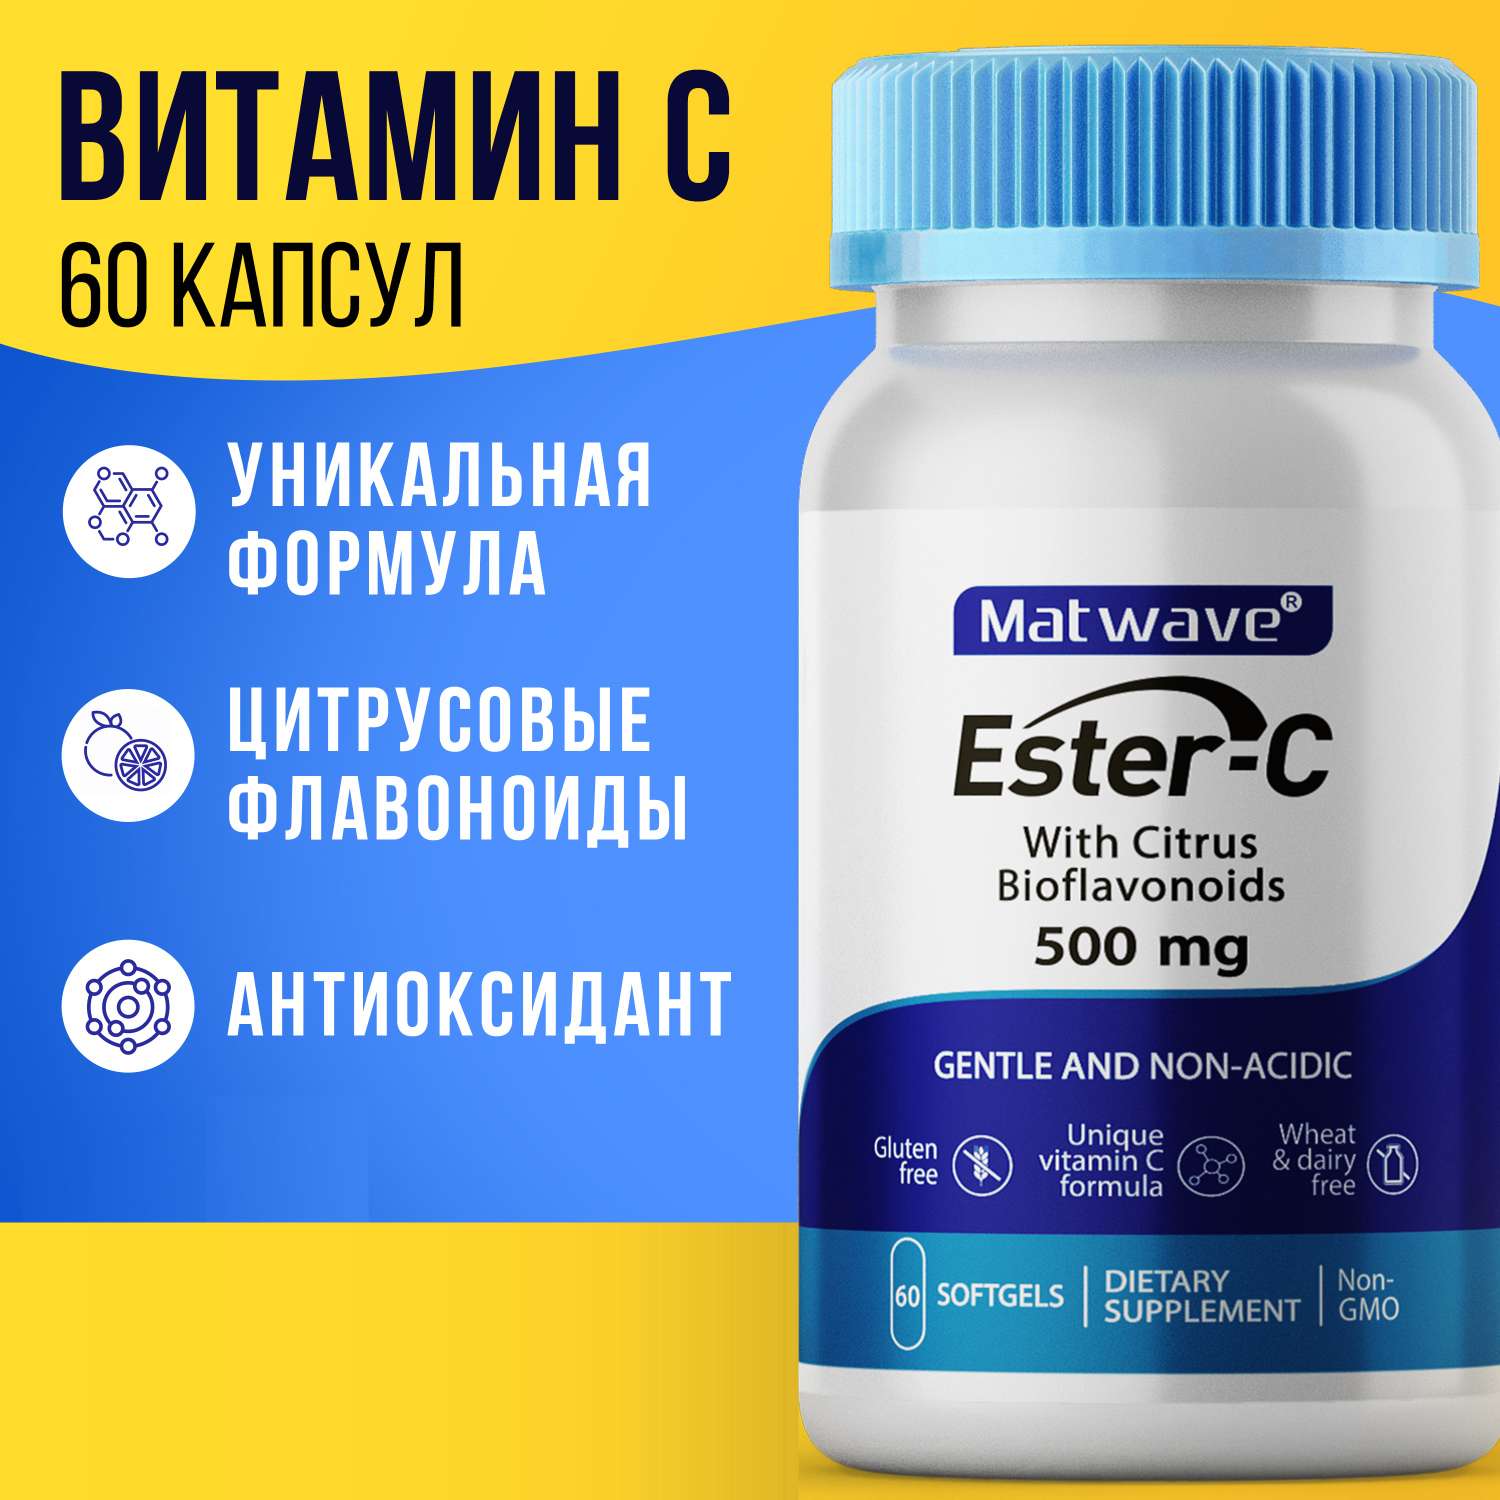 Витамин С Matwave Ester-C Эстер С 500 mg 60 капсул комплект 3 упаковки - фото 2